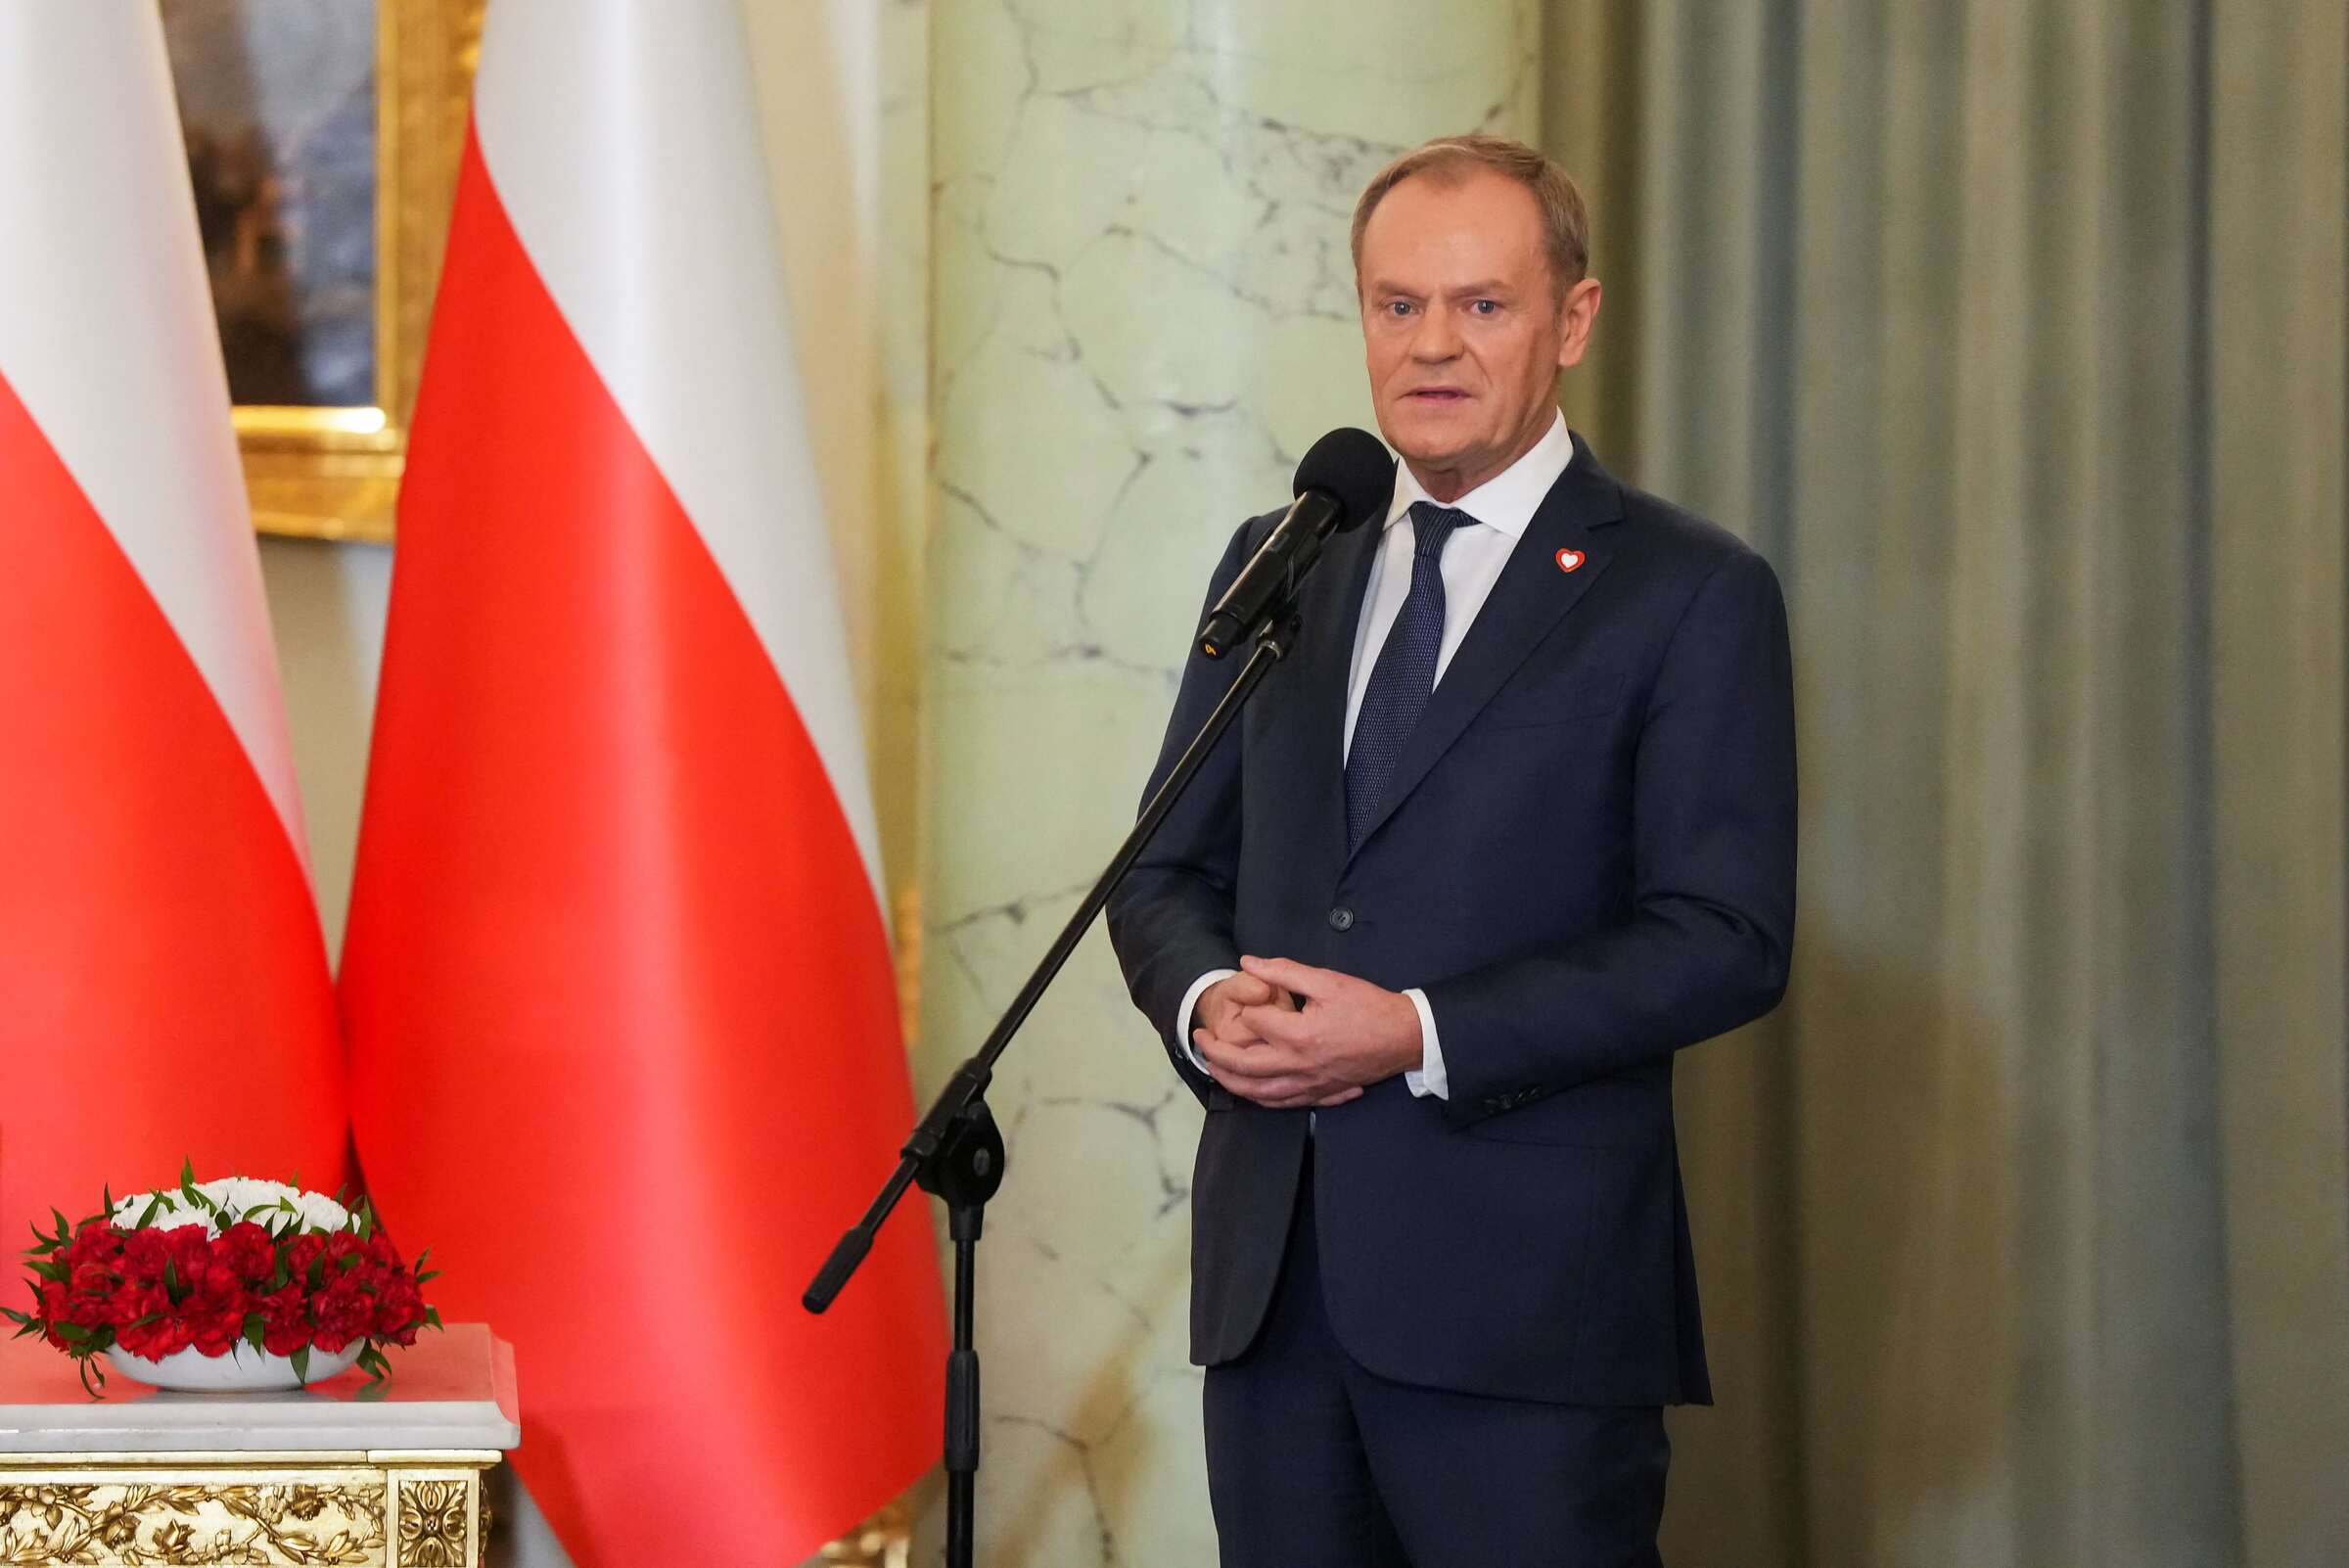 图斯克宣誓再任波兰总理   修复与欧盟关系支援乌克兰